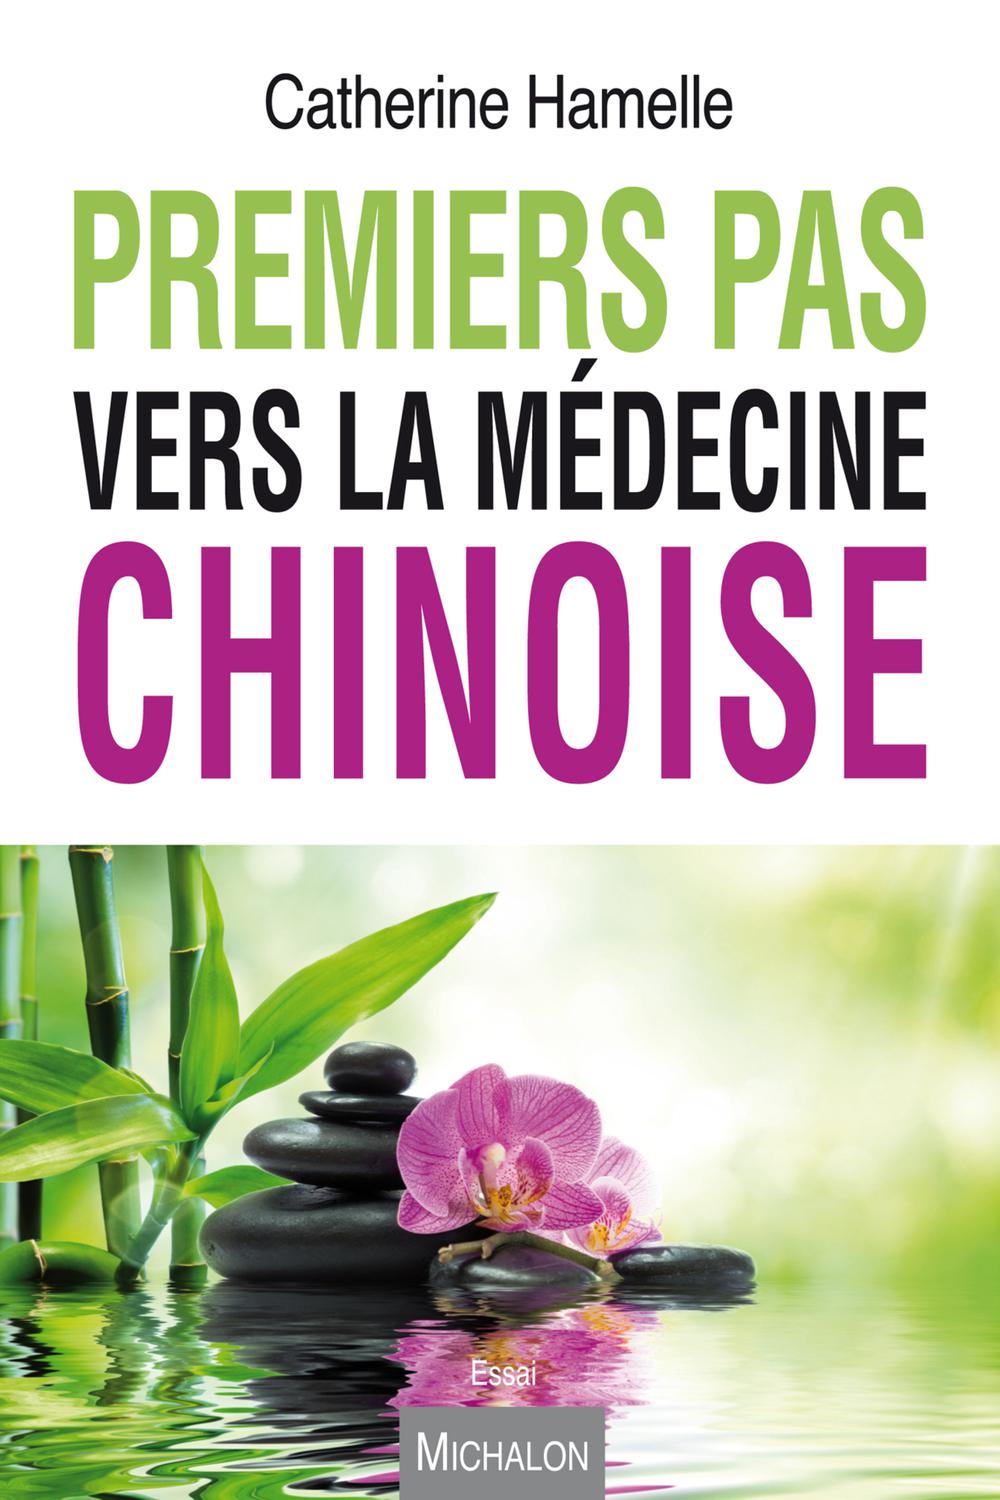 Premier pas vers la médecine chinoise - Catherine Hamelle